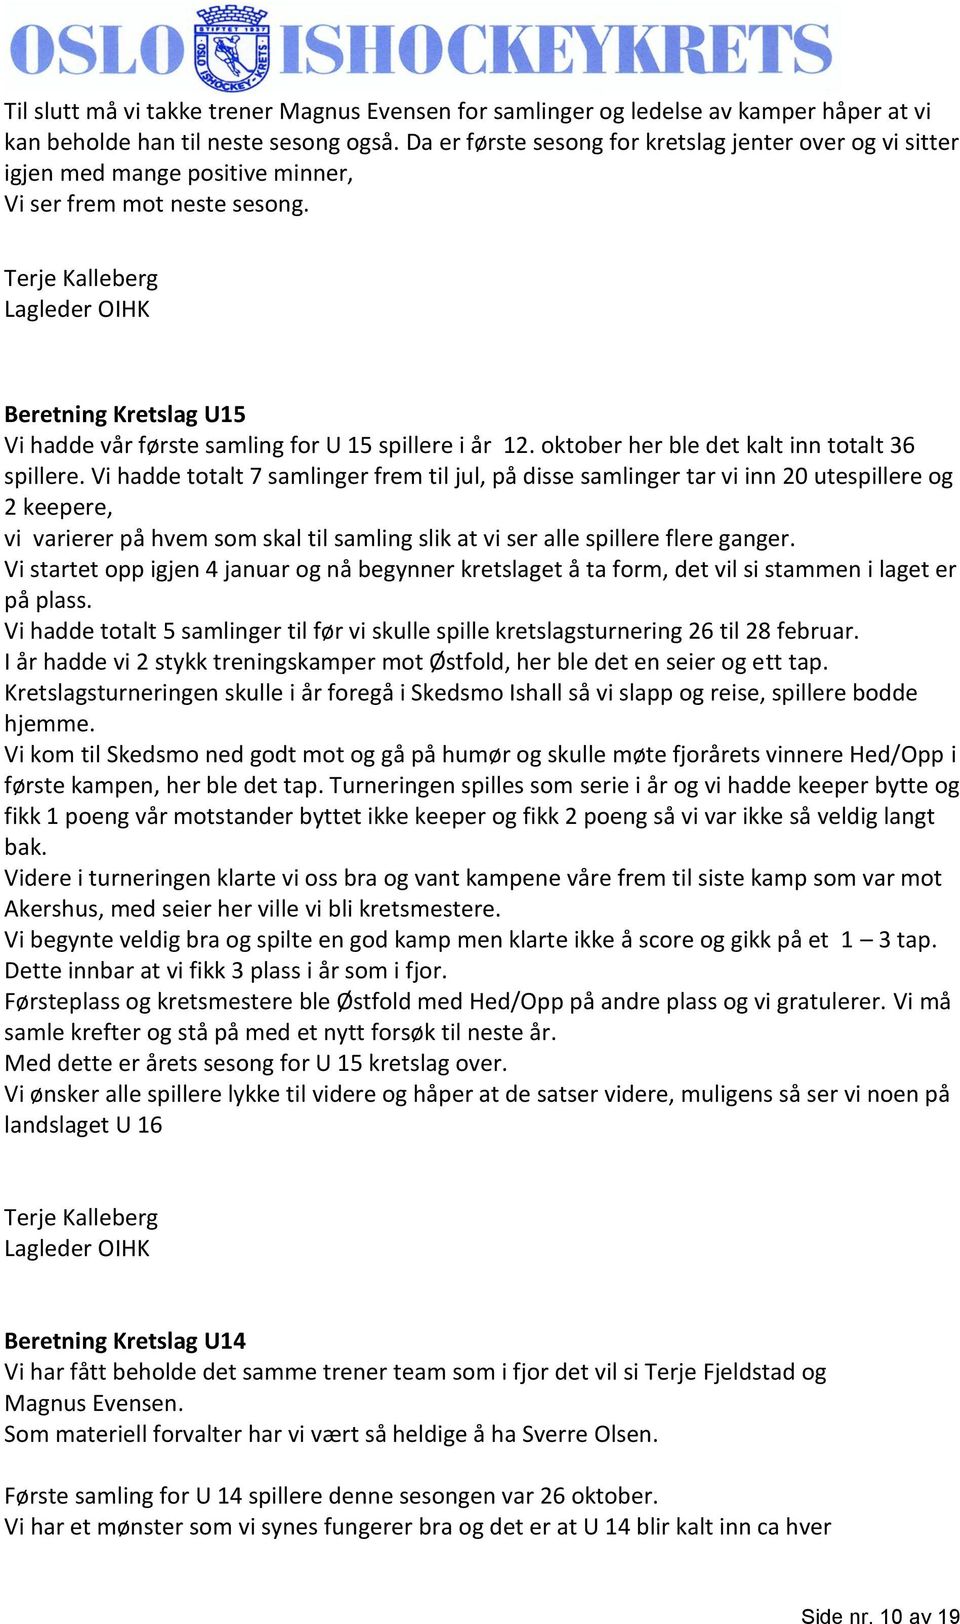 Terje Kalleberg Lagleder OIHK Beretning Kretslag U15 Vi hadde vår første samling for U 15 spillere i år 12. oktober her ble det kalt inn totalt 36 spillere.